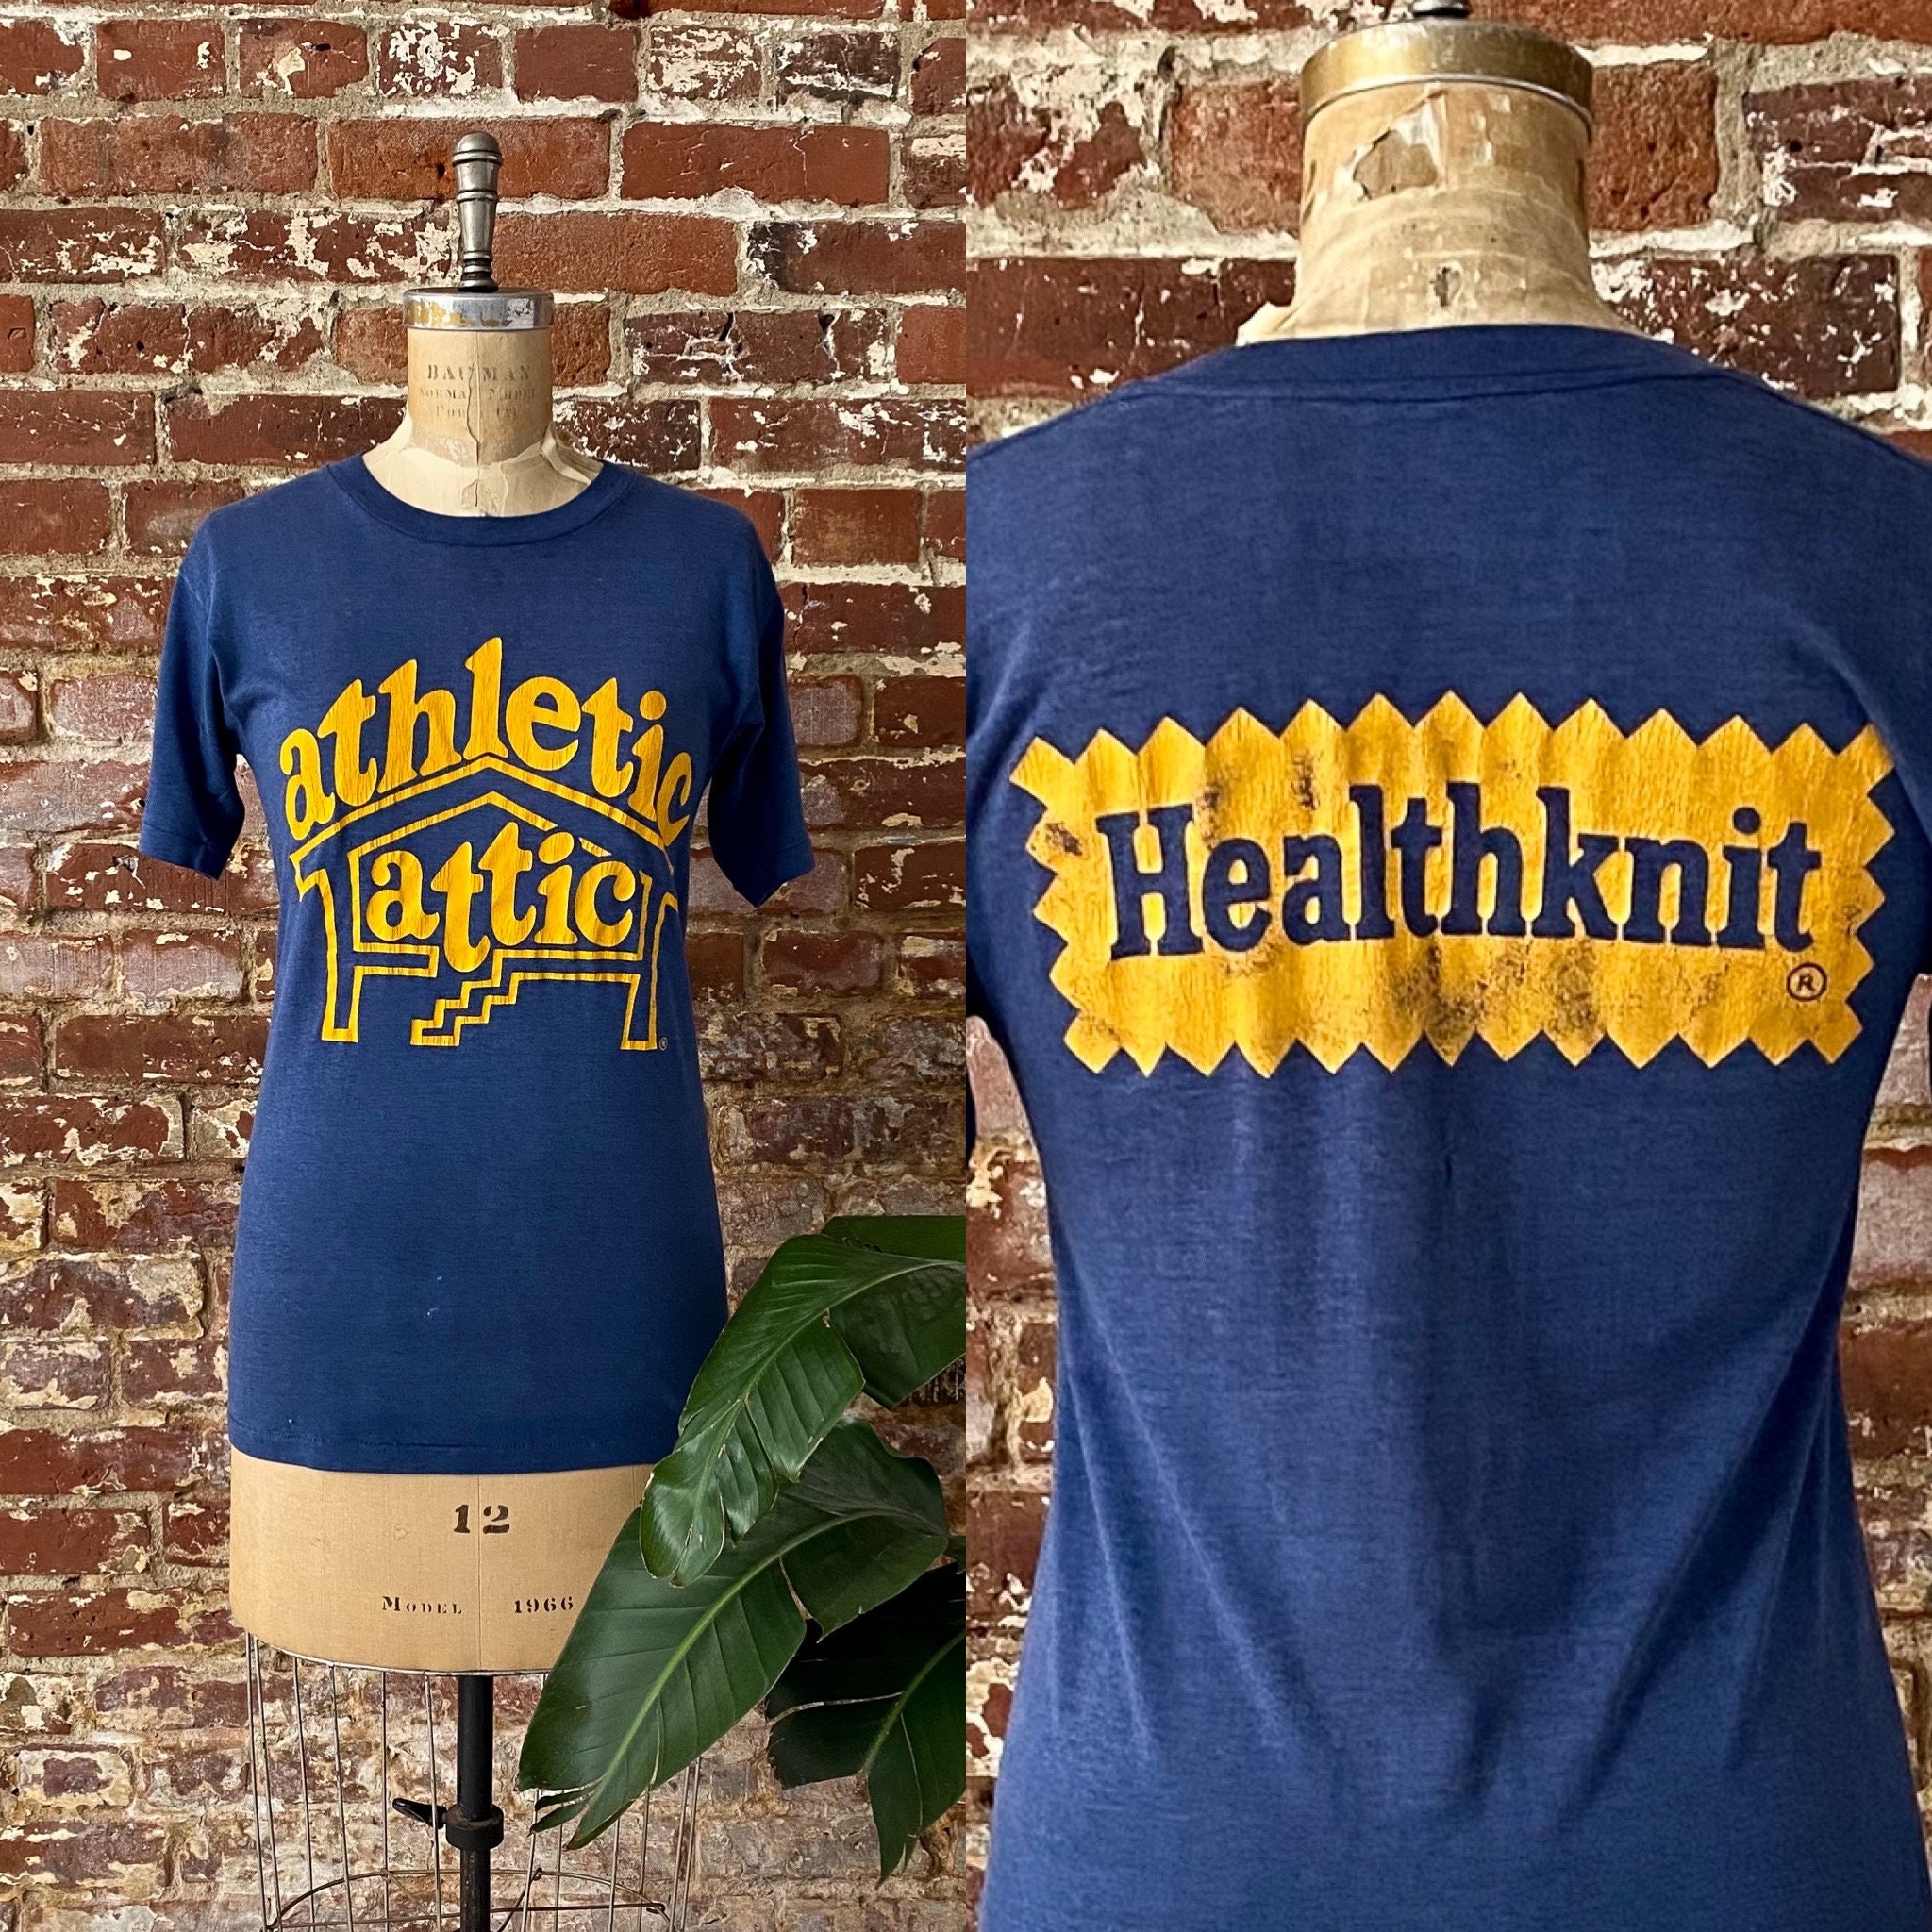 Healthknit Tshirt - Etsy